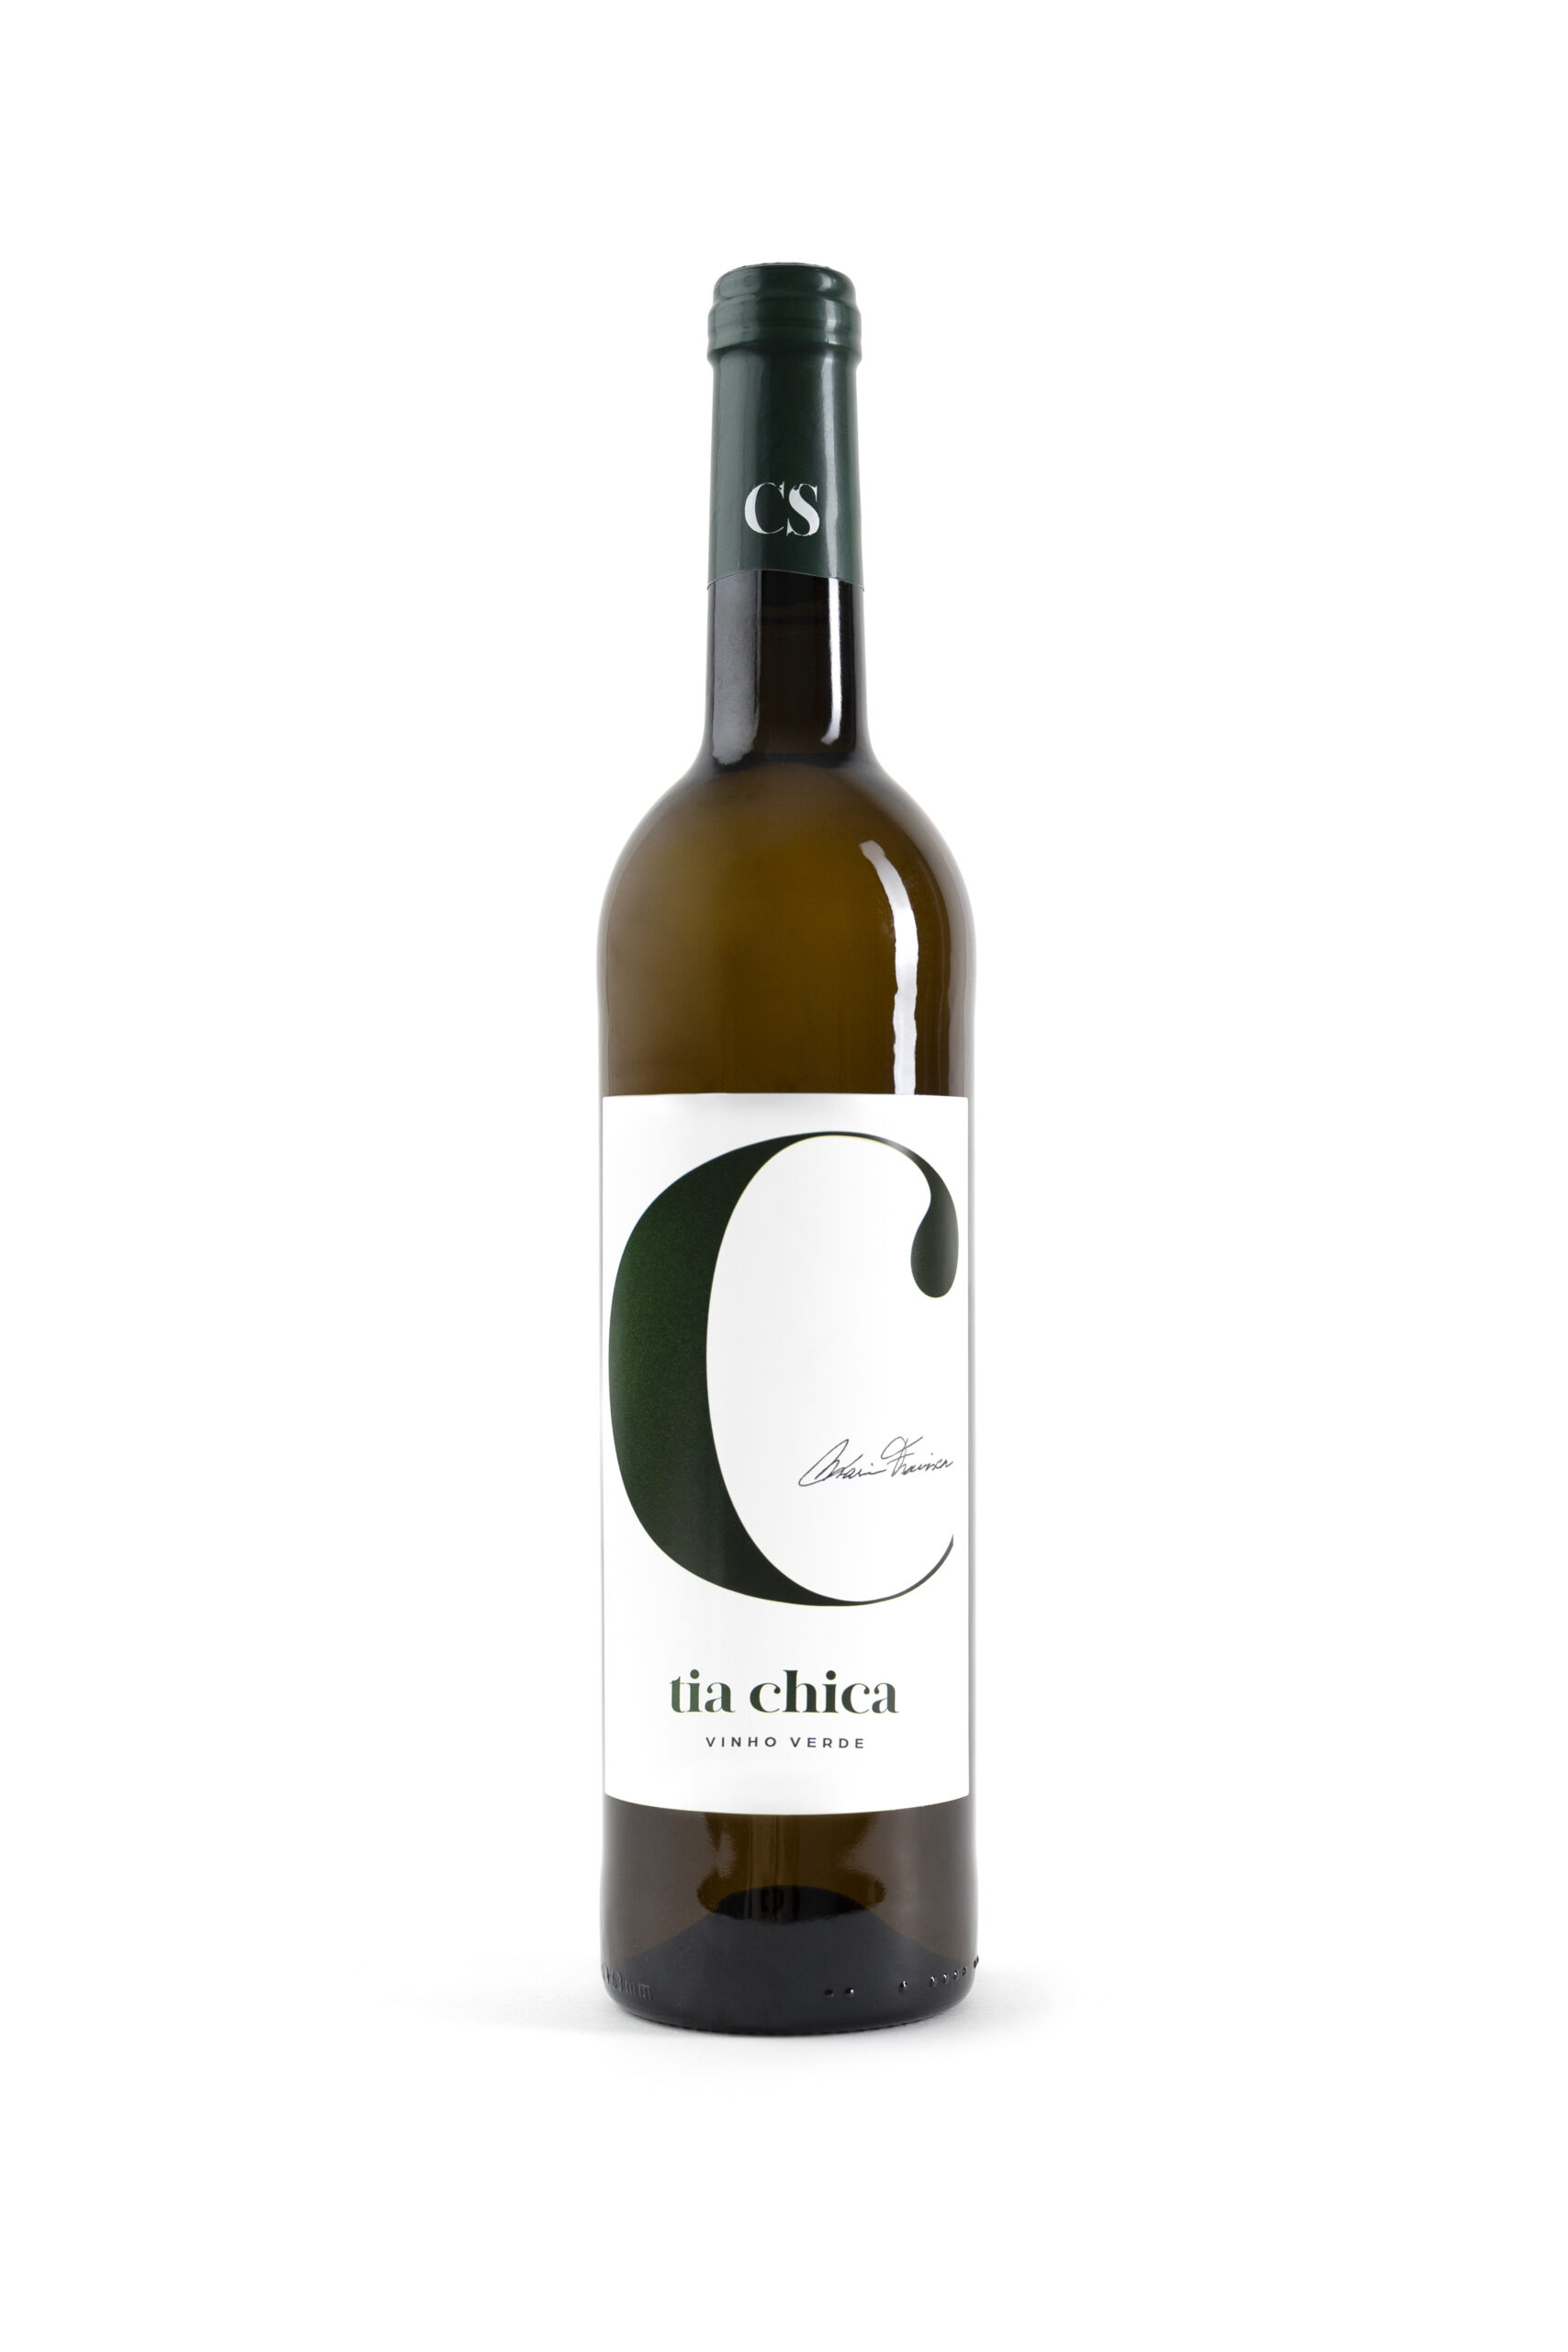 garrafa de vinho verde casa de sezim Tia Chica, castas Loureiro, Arinto, Azal, Trajadura e Fernão Pires